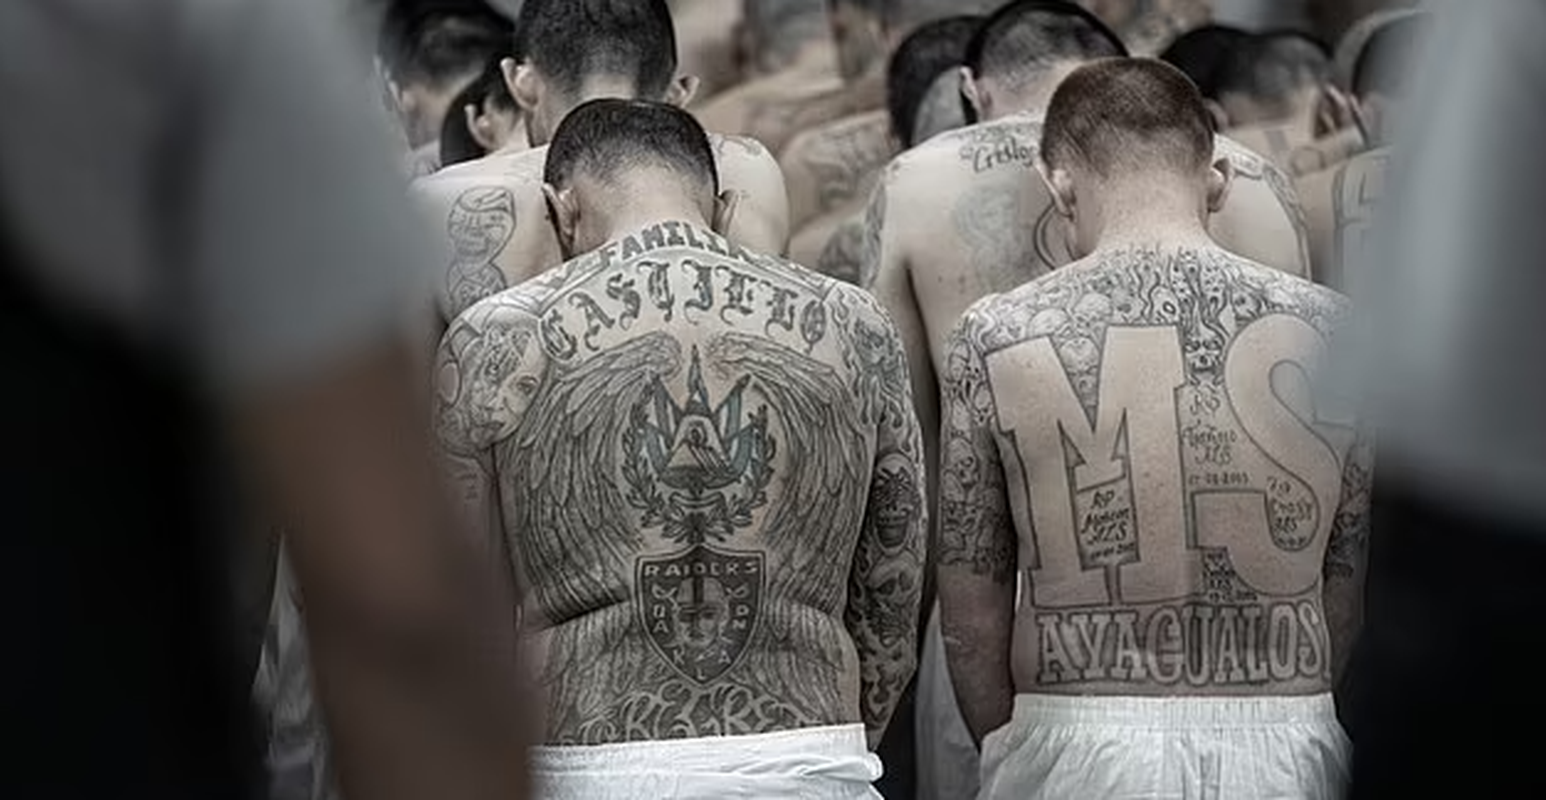 View -             Kinh hãi bên trong nhà tù 'địa ngục' ở El Salvador    